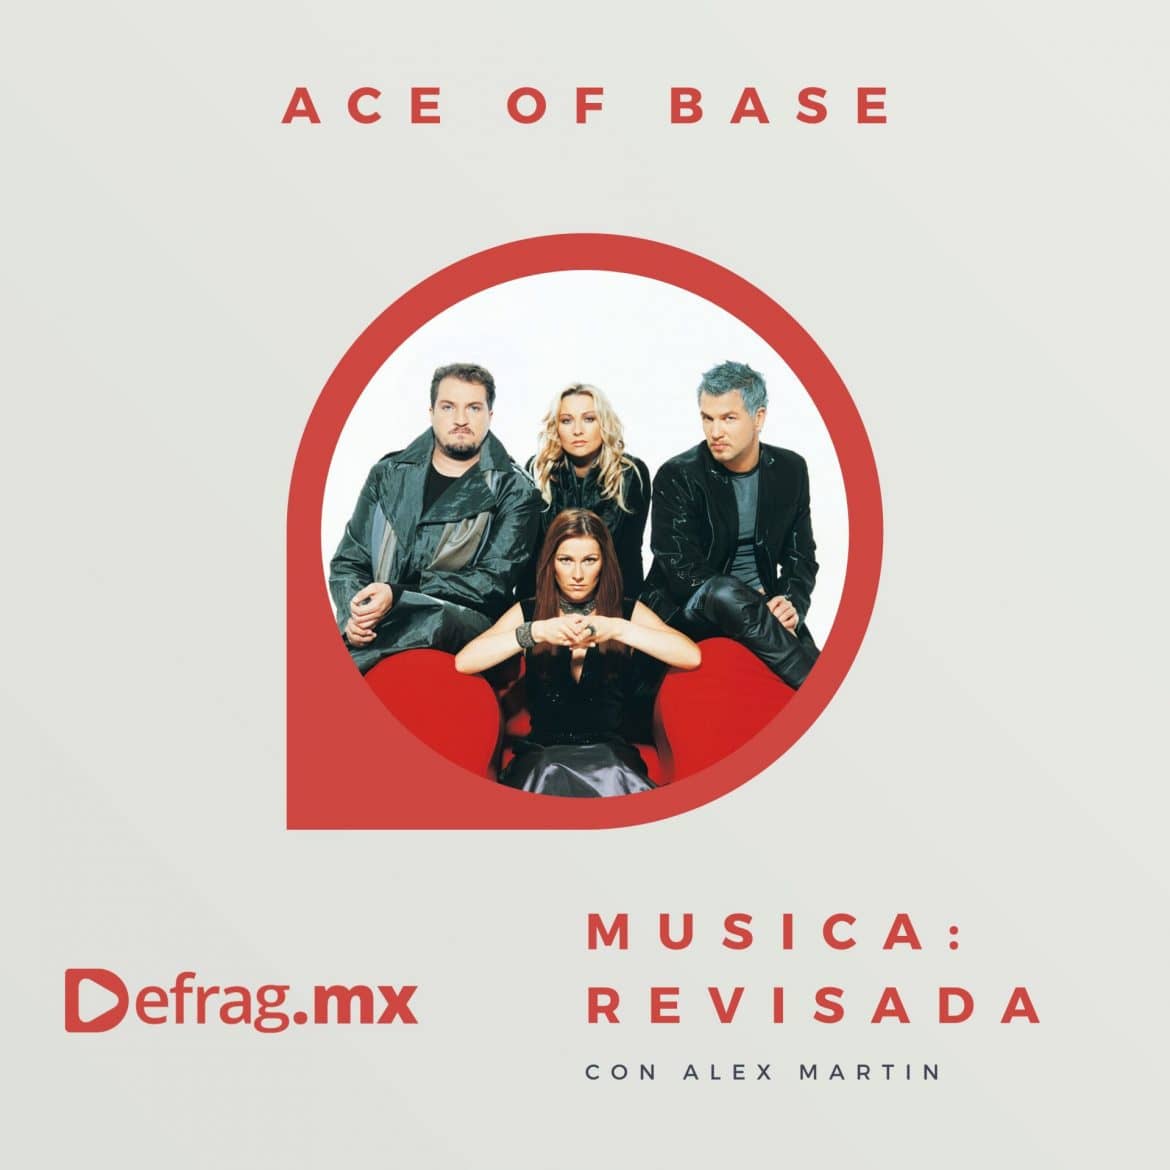 Defrag.mx Podcast Música Revisada Ace of Base